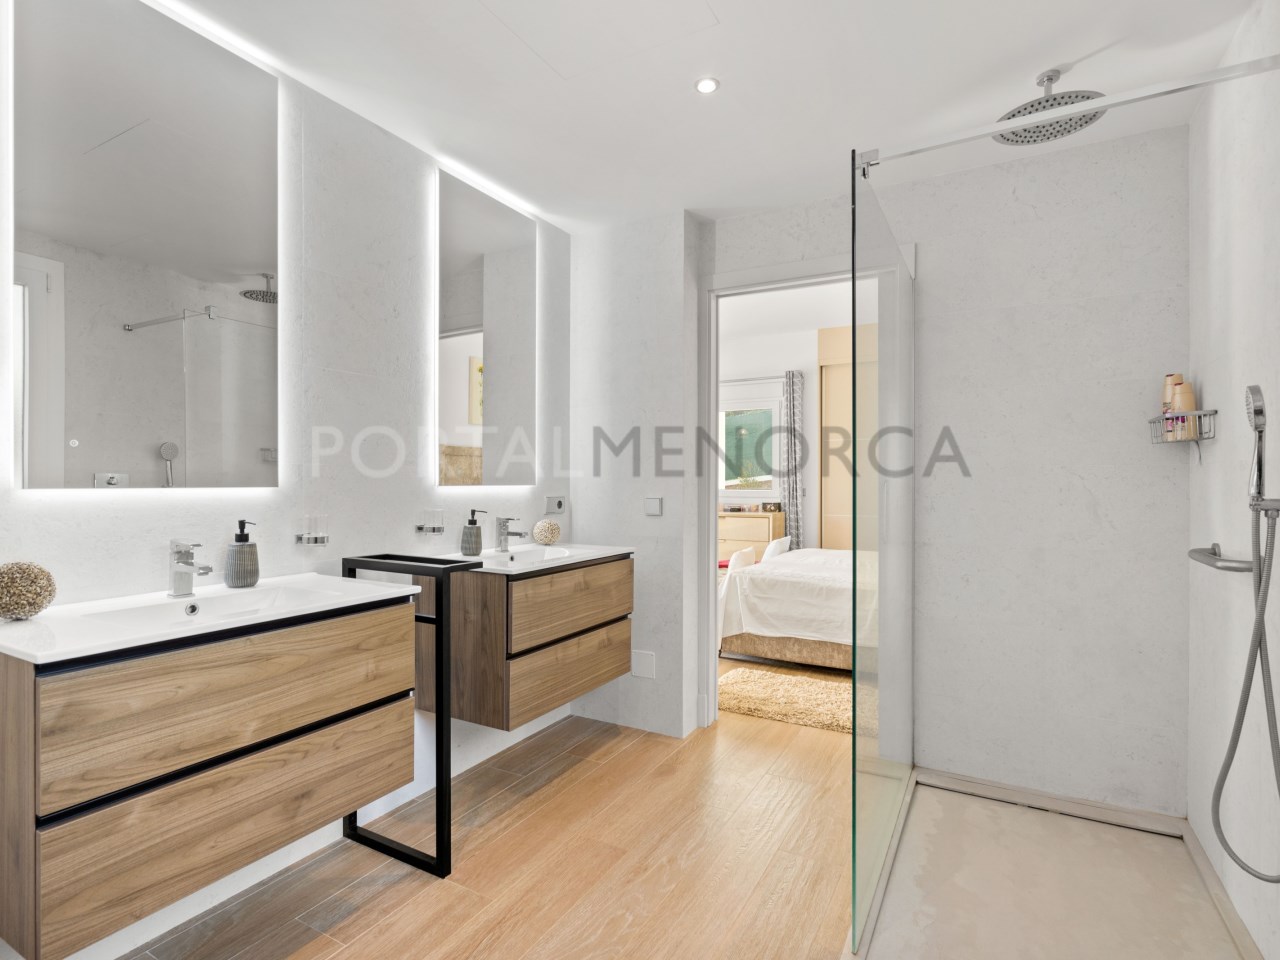 Bathroom en suite ground floor in luxury house in Mercadal